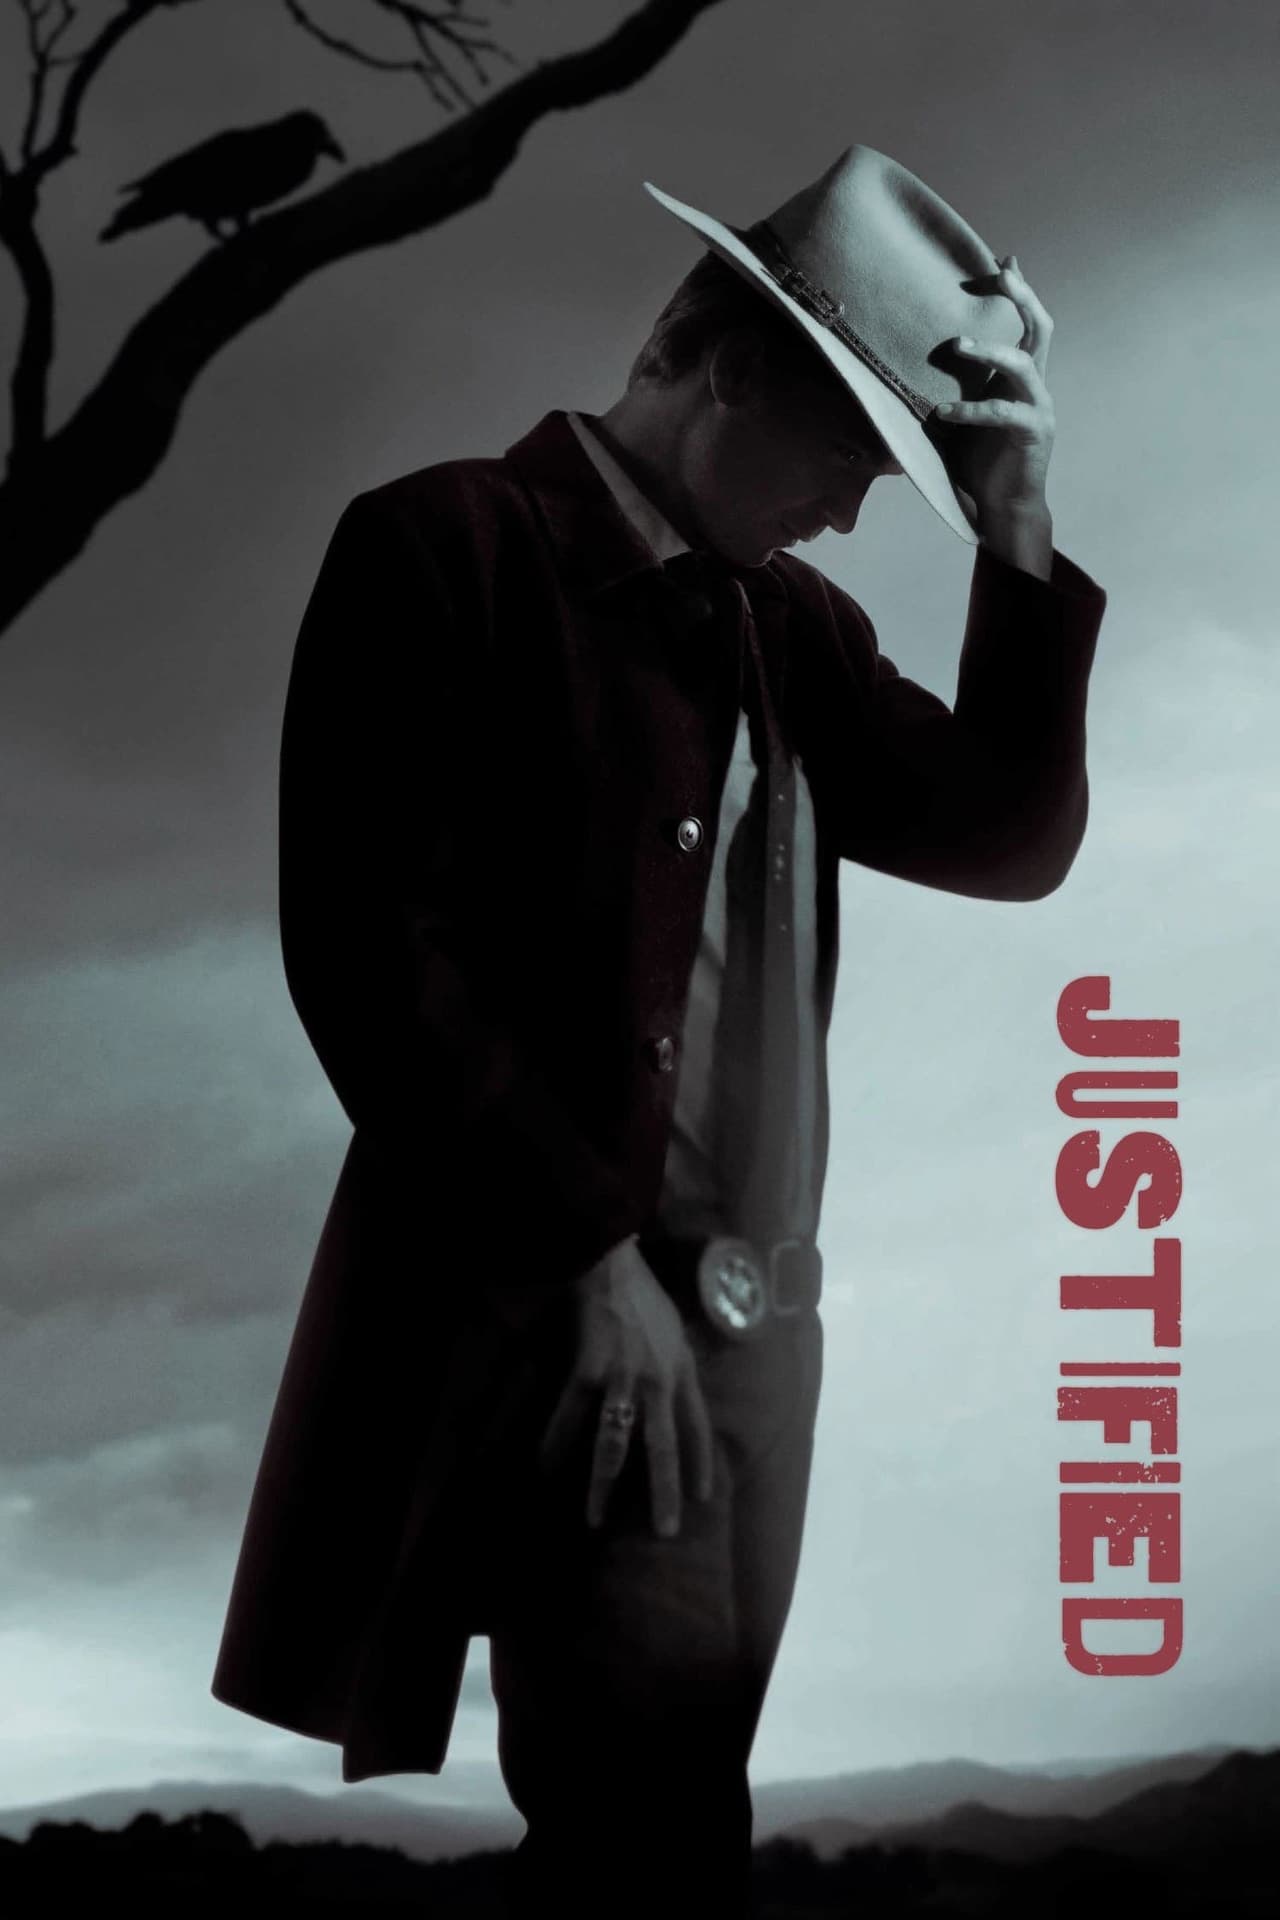 Justified (season 2)